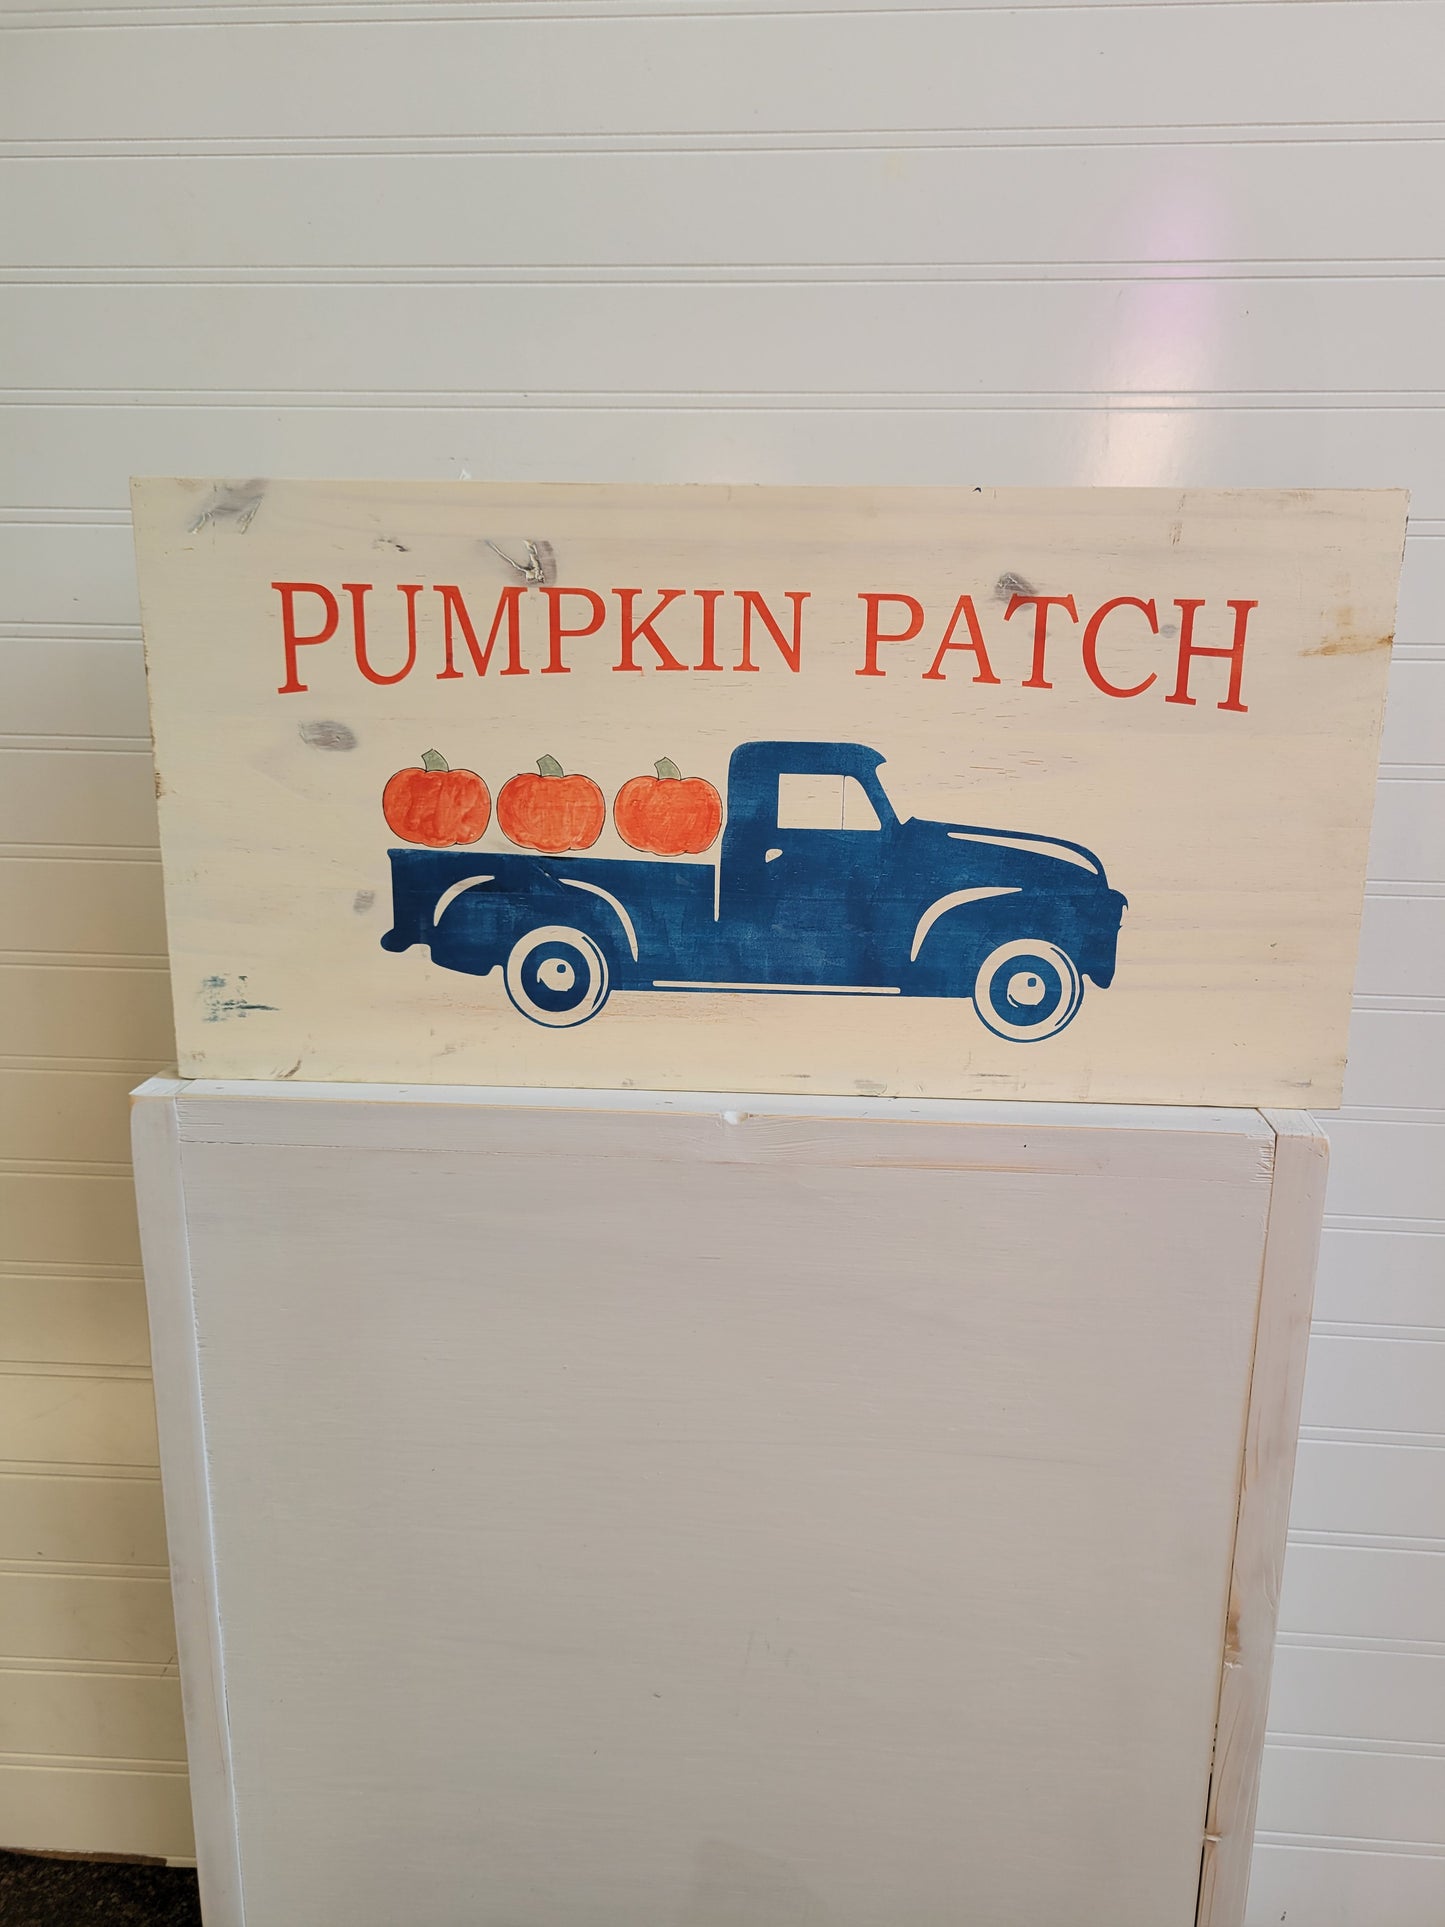 Pumpkin Patch truck